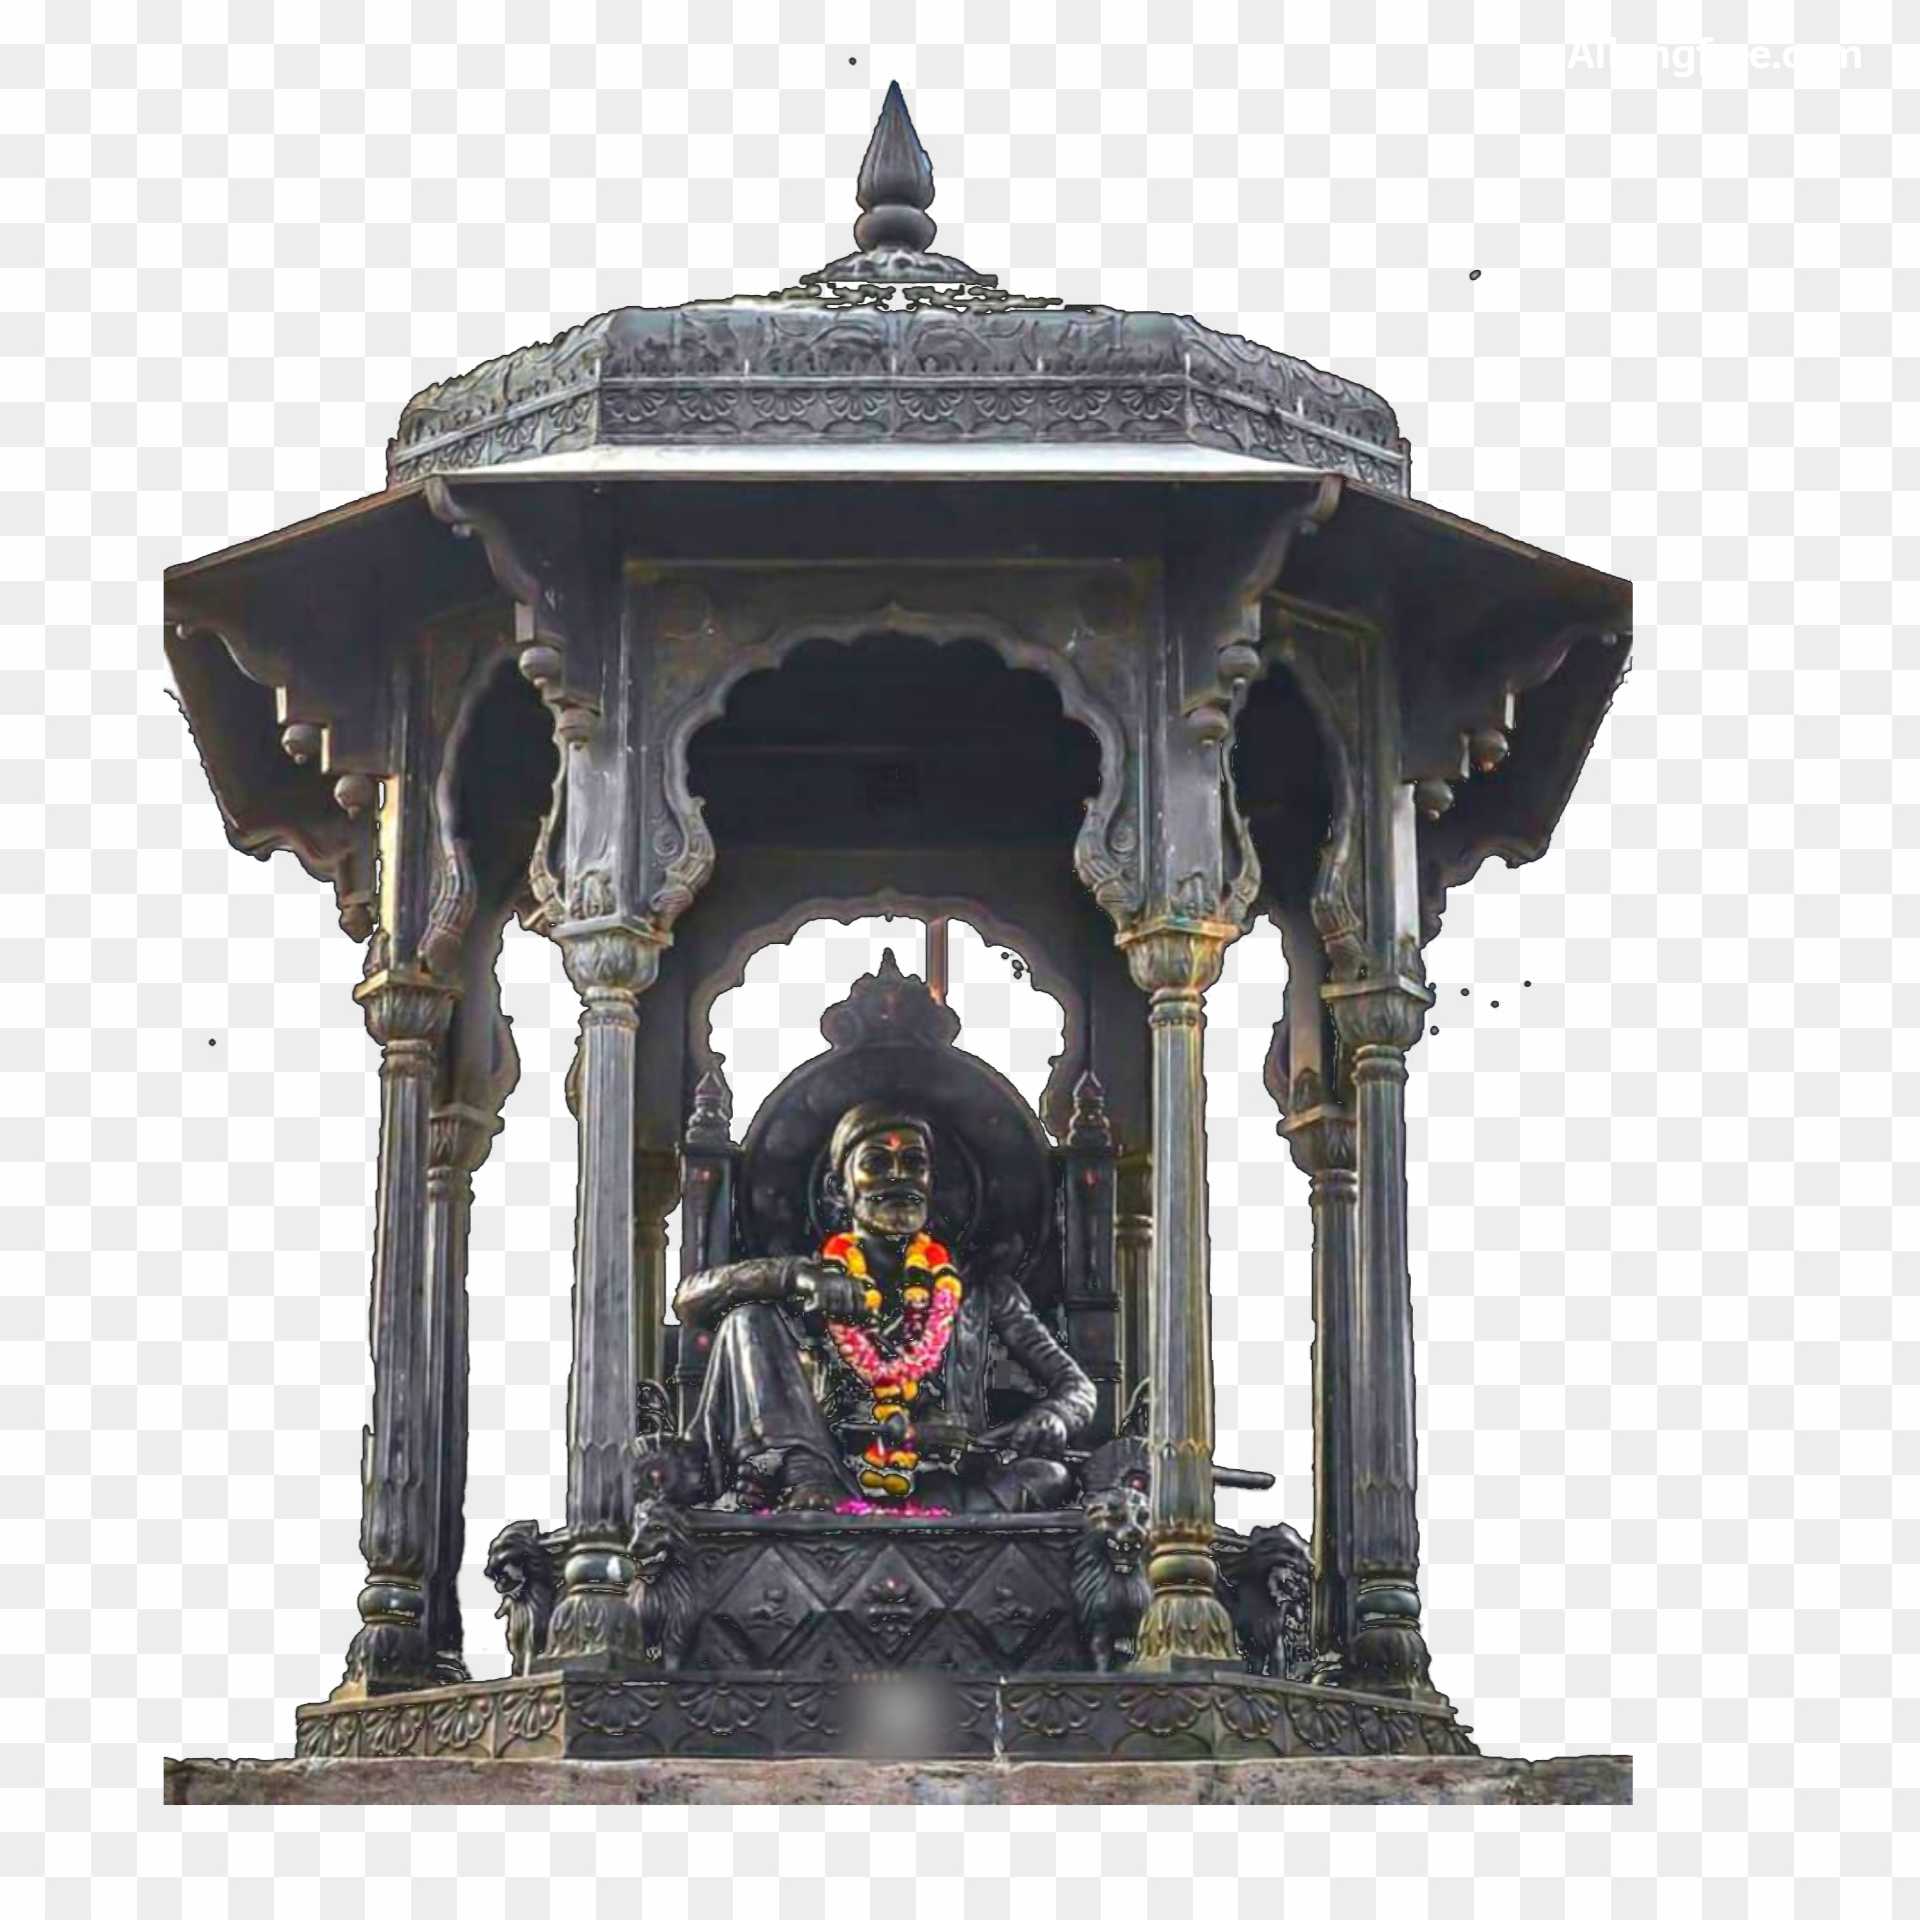 Chhatrapati Shivaji PNG images download